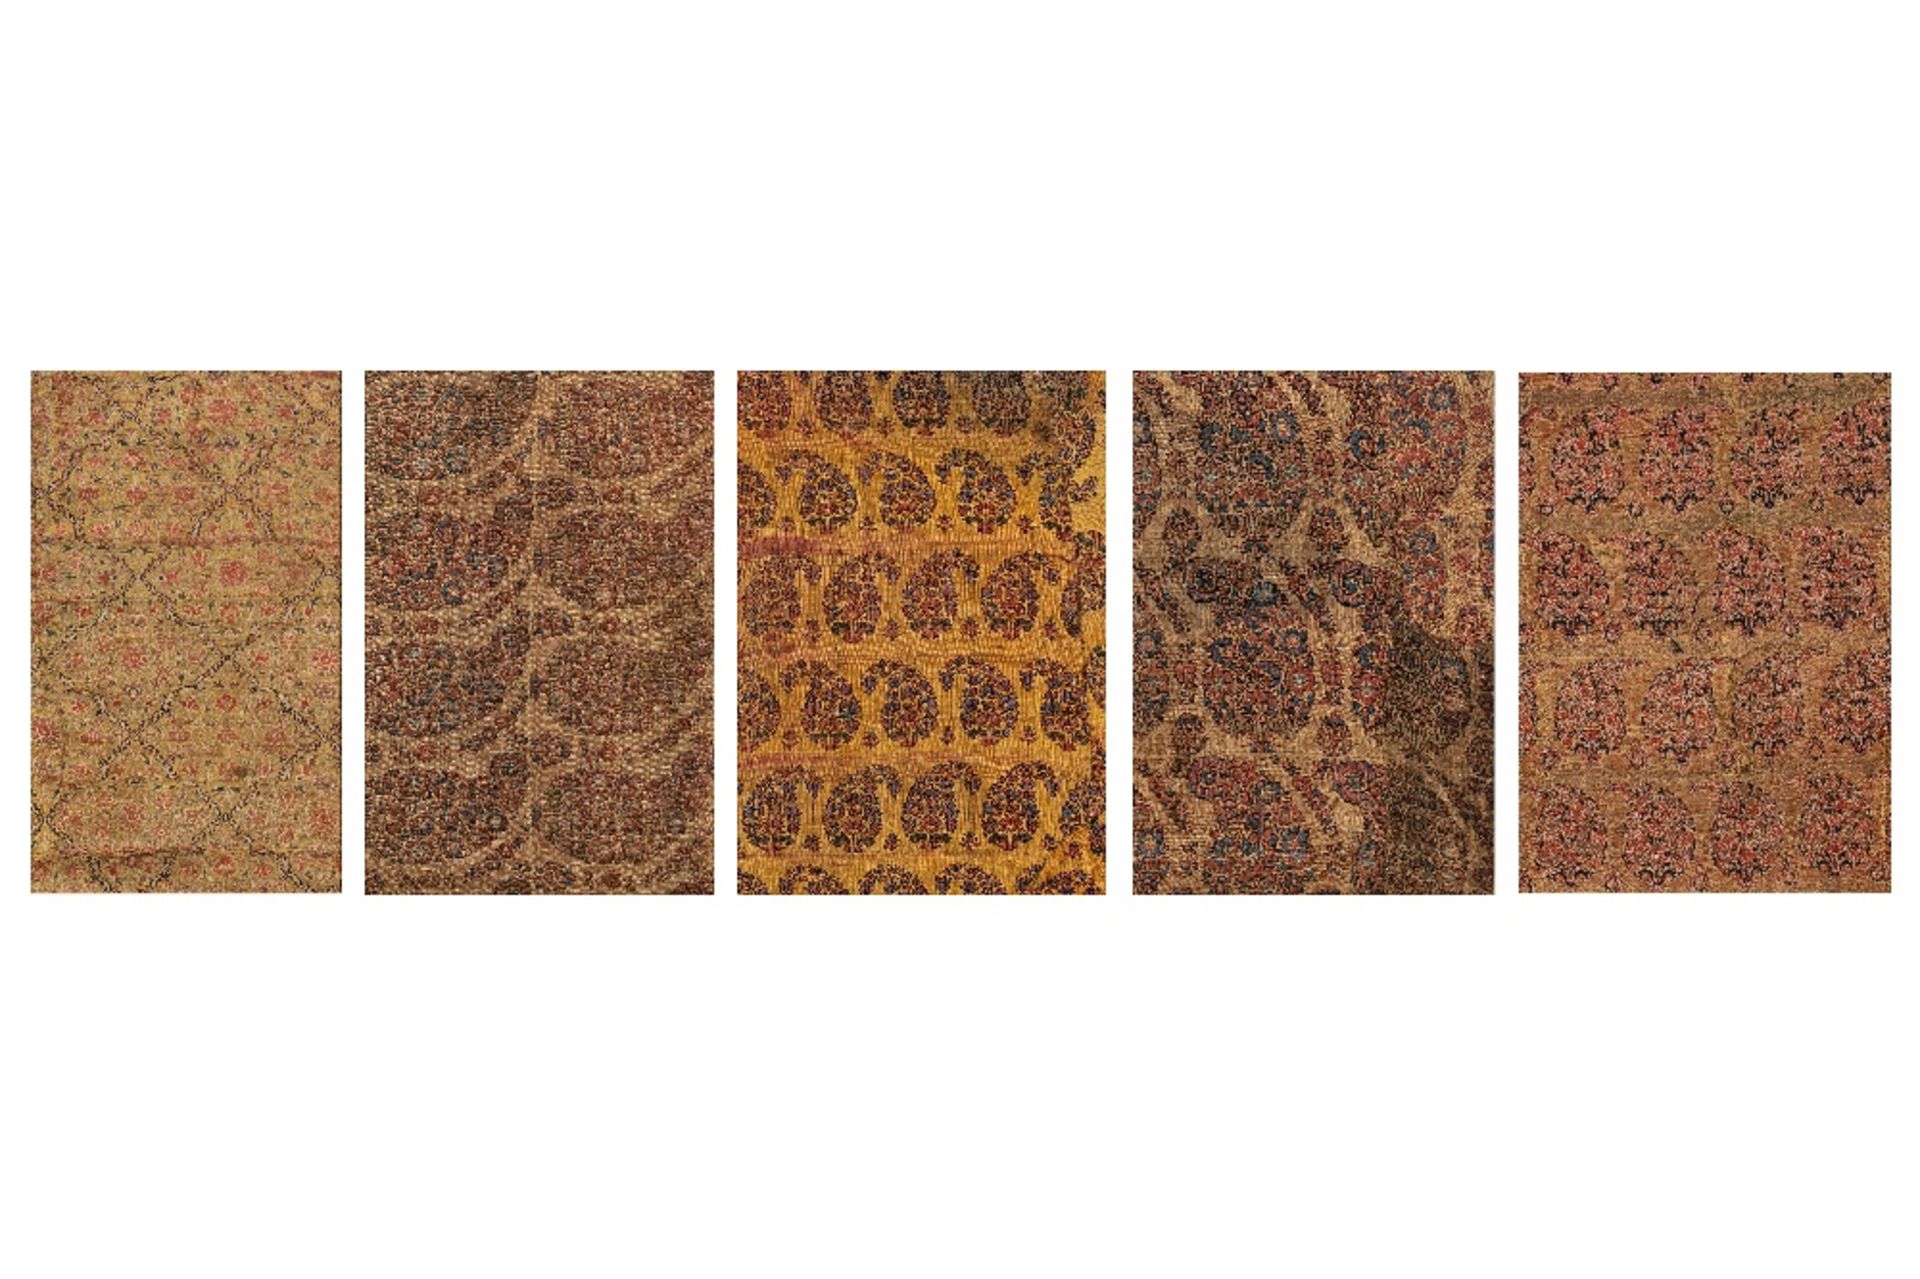 Cinq soieries mogholesInde, XVIIIème - XIXème siècleFragments brodés de fils de soie polychrome dont